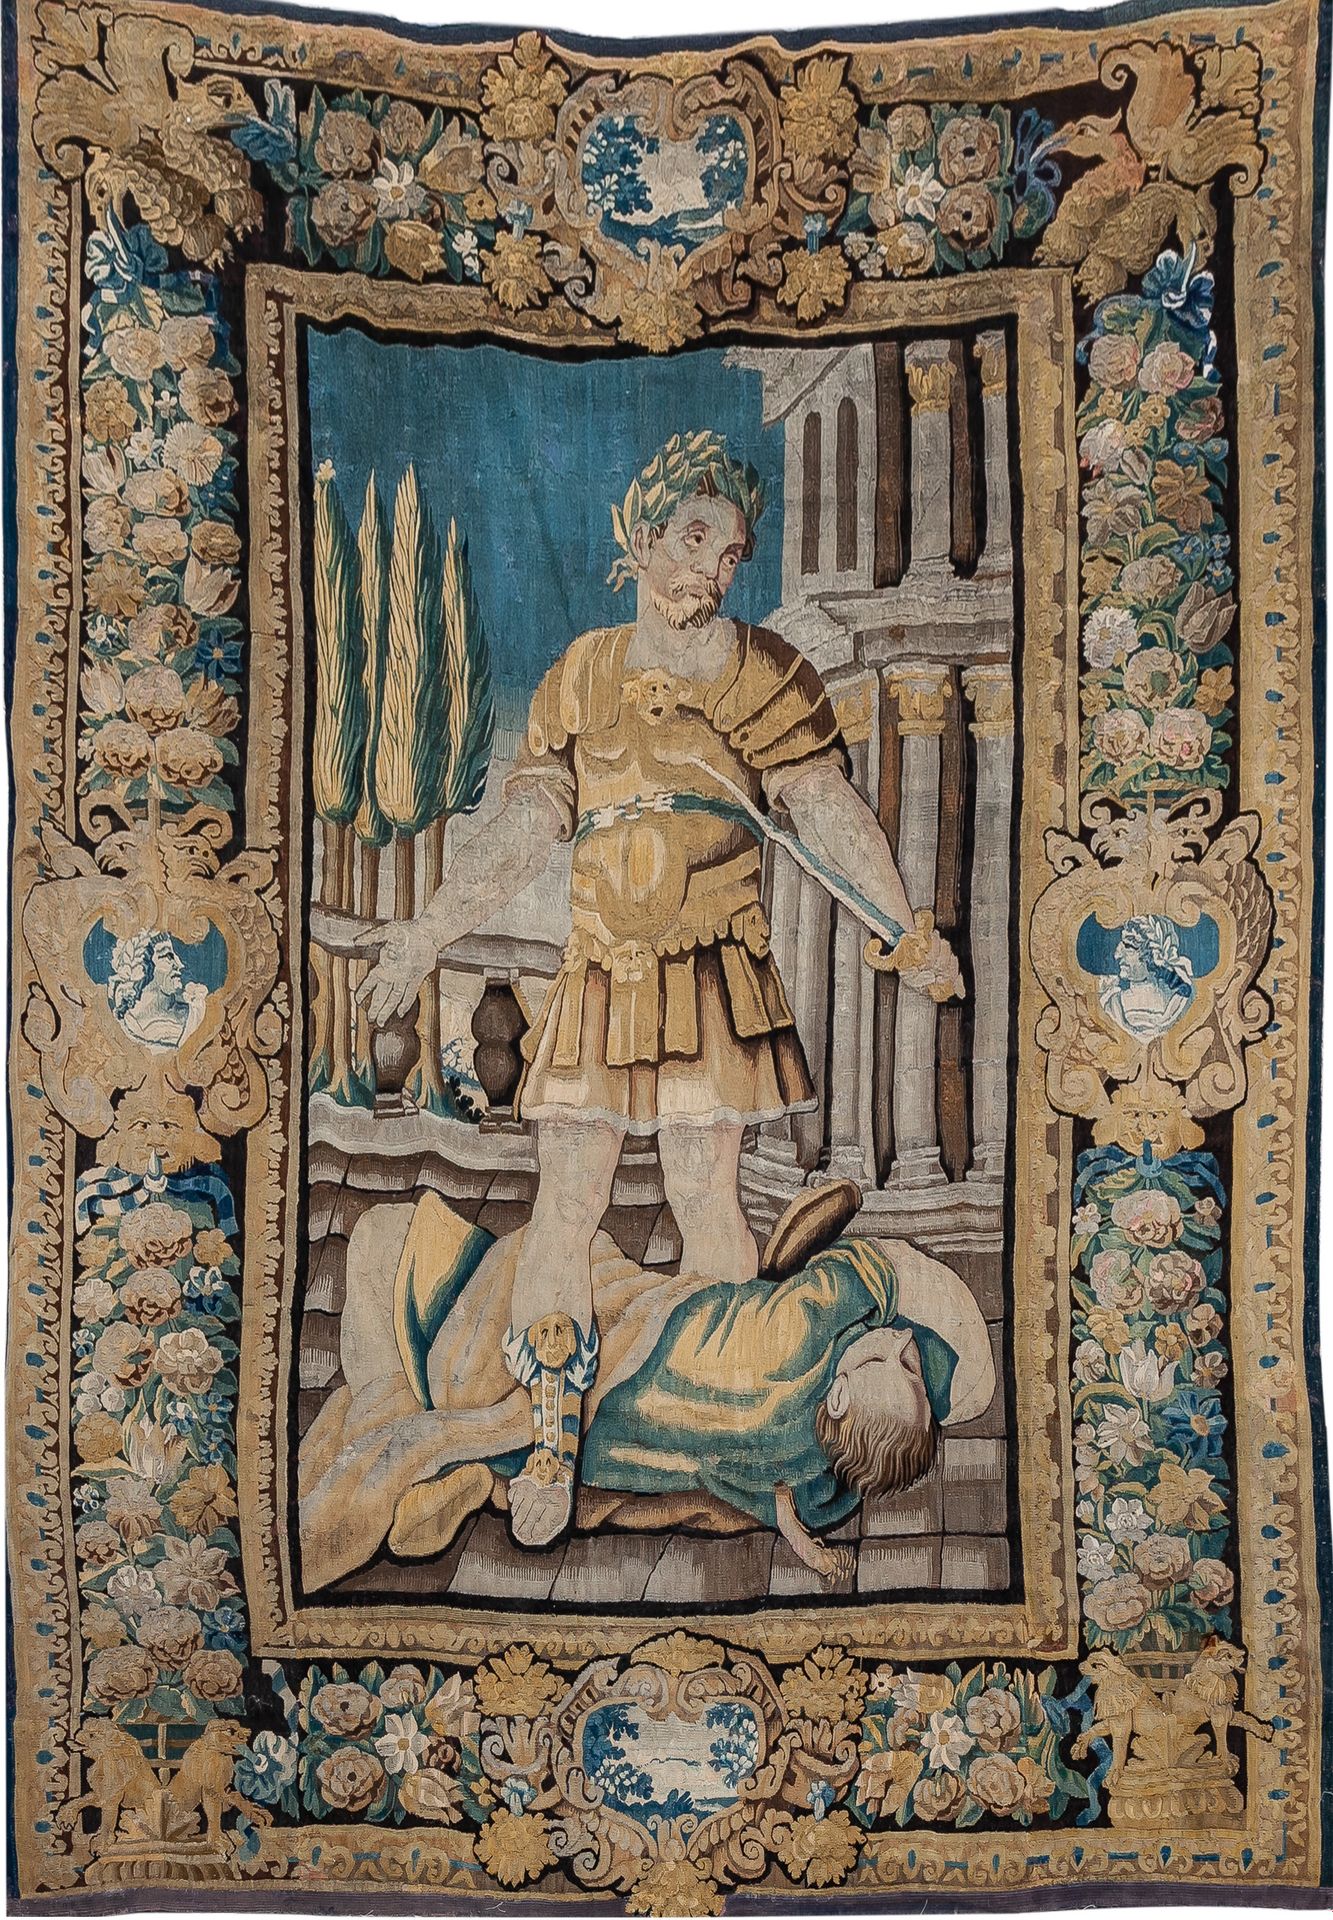 Null 描绘罗马皇帝击败敌人的弗拉芒挂毯，18世纪。边框上装饰着动物和带有风景和皇帝肖像的刻痕。

311 x 216 cm

5.000 - 6.000 €